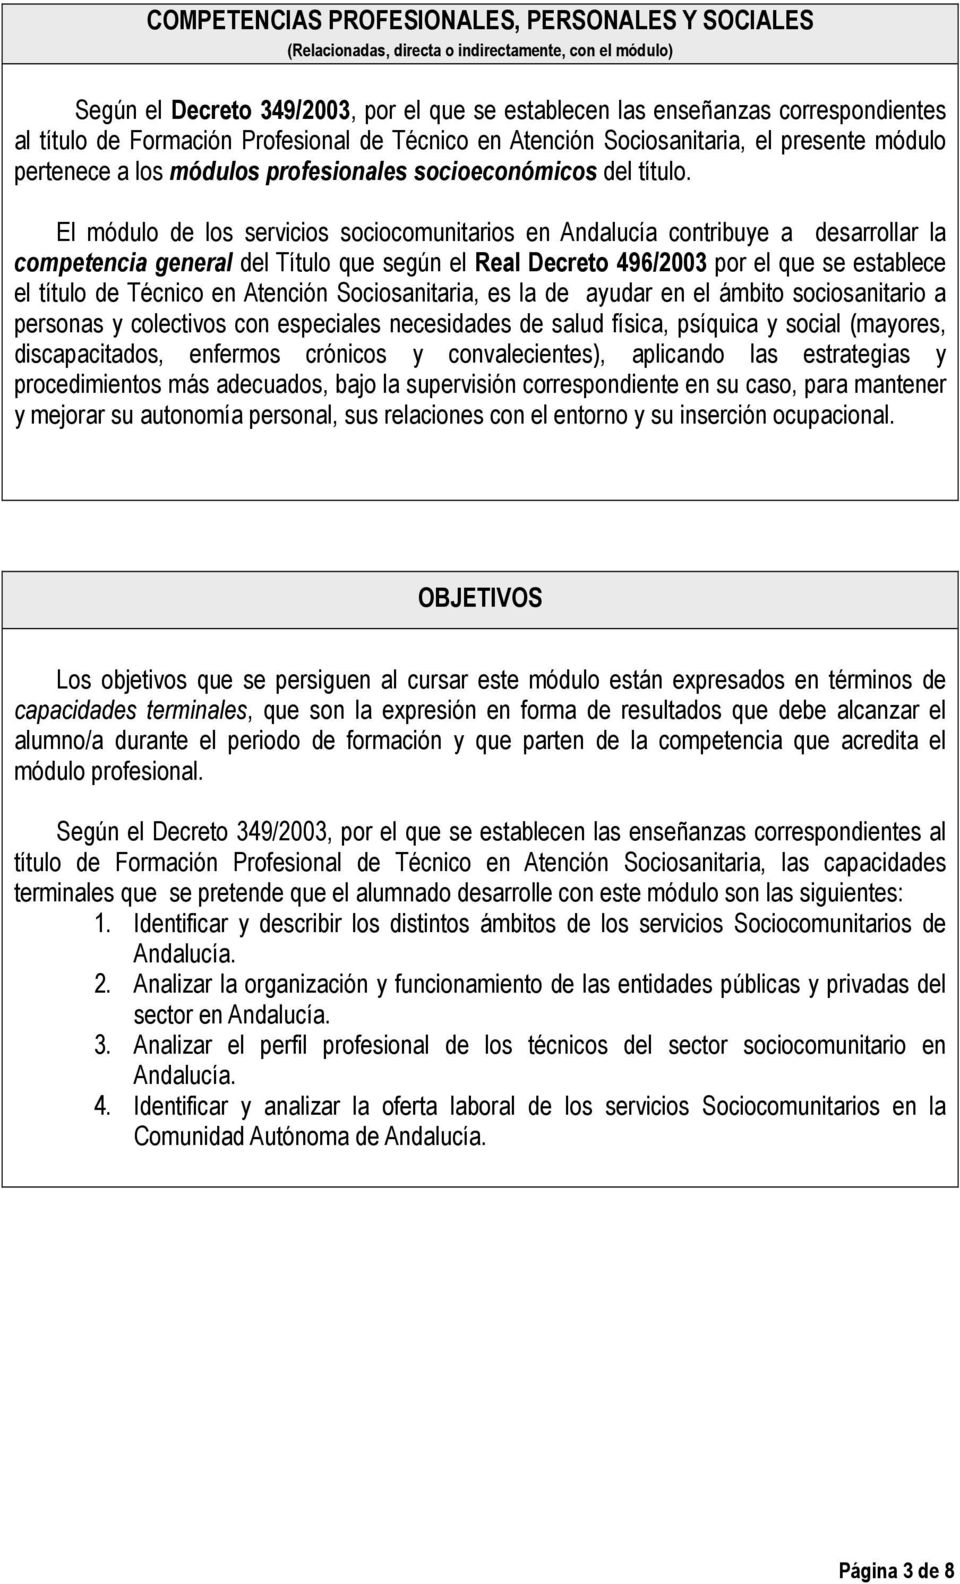 El módulo de los servicios sociocomunitarios en Andalucía contribuye a desarrollar la competencia general del Título que según el Real Decreto 496/2003 por el que se establece el título de Técnico en